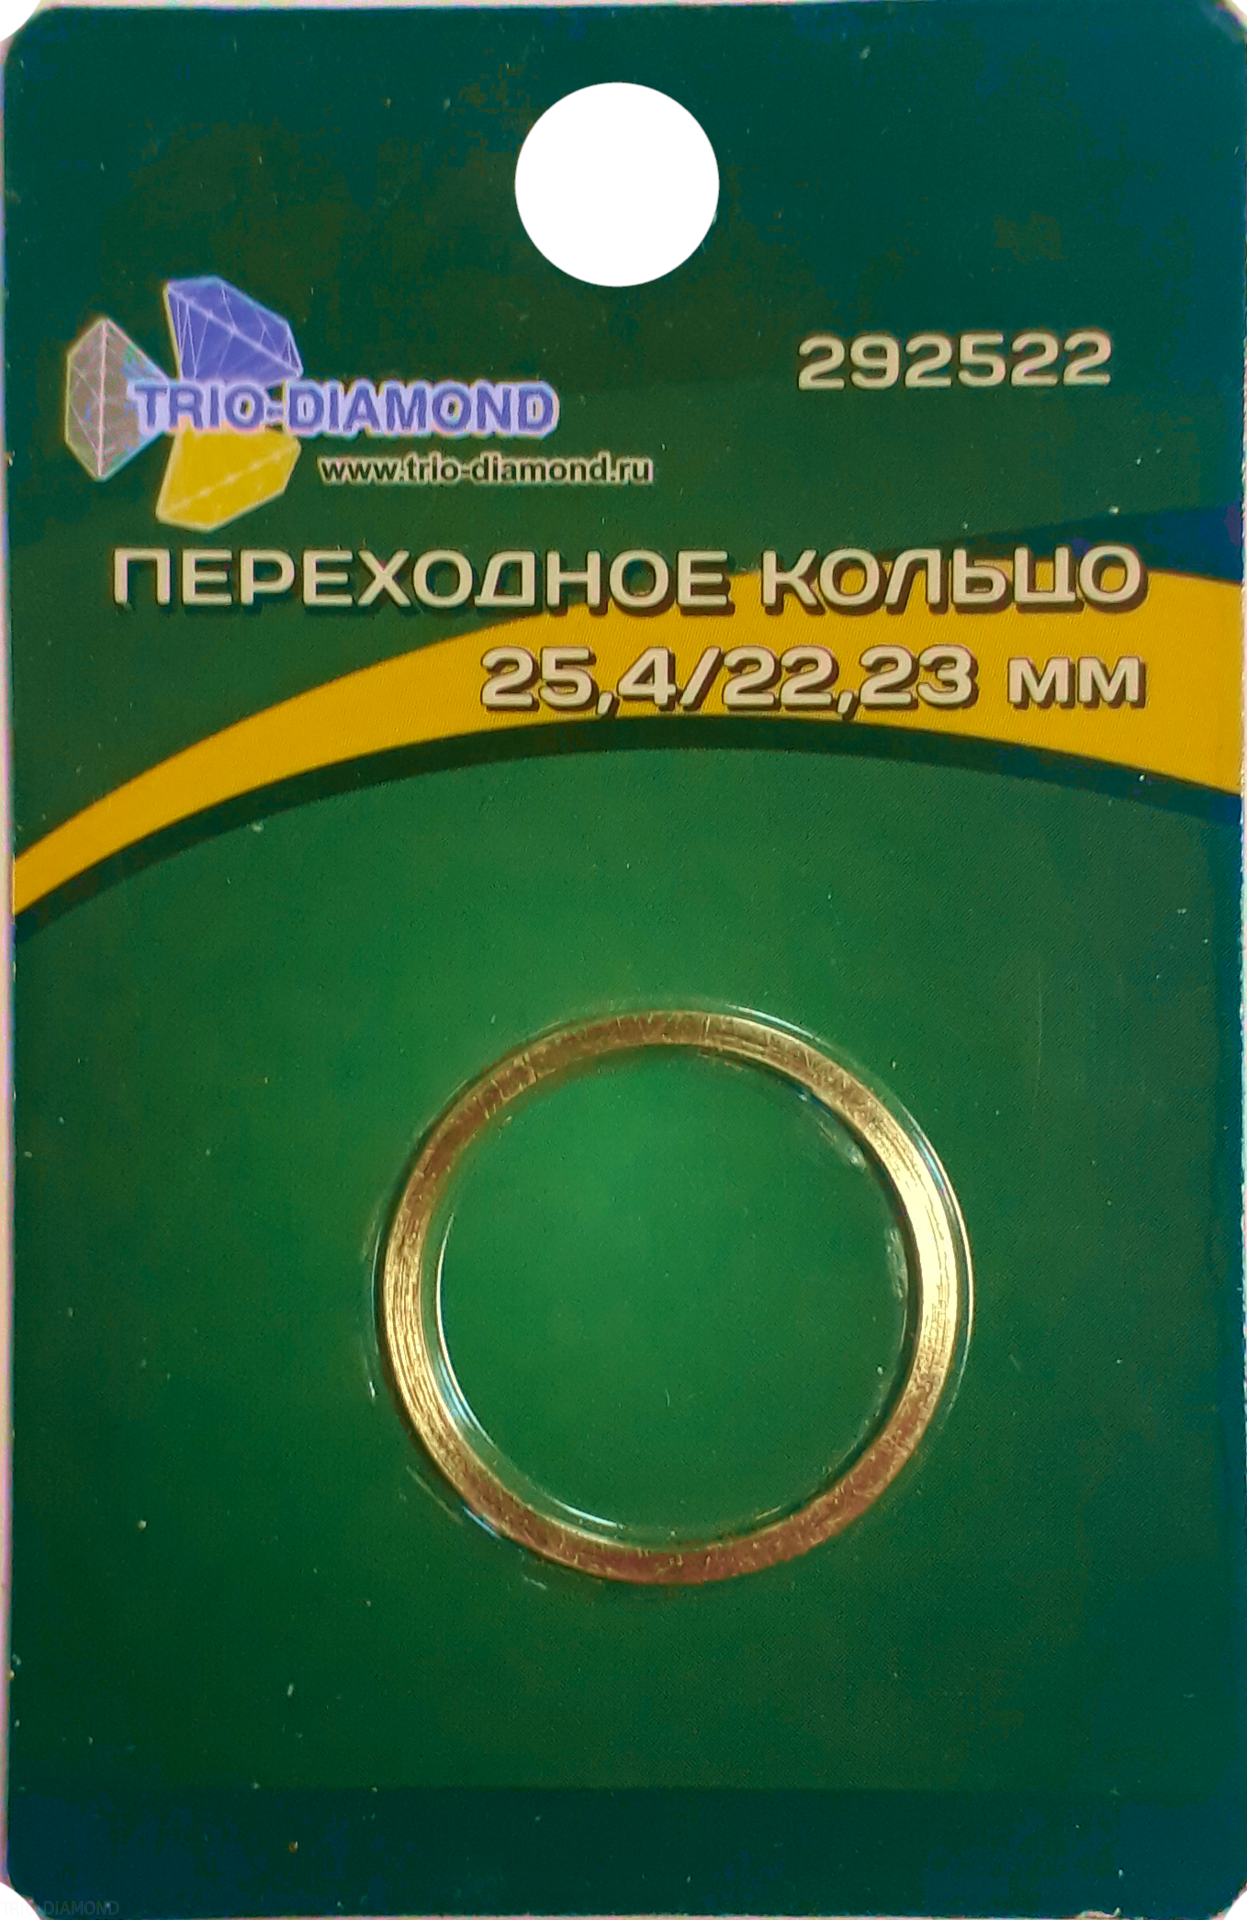 Кольцо переходное 25,4/22,23 292522 Трио-Диамонд переходное кольцо для пильных дисков kwb